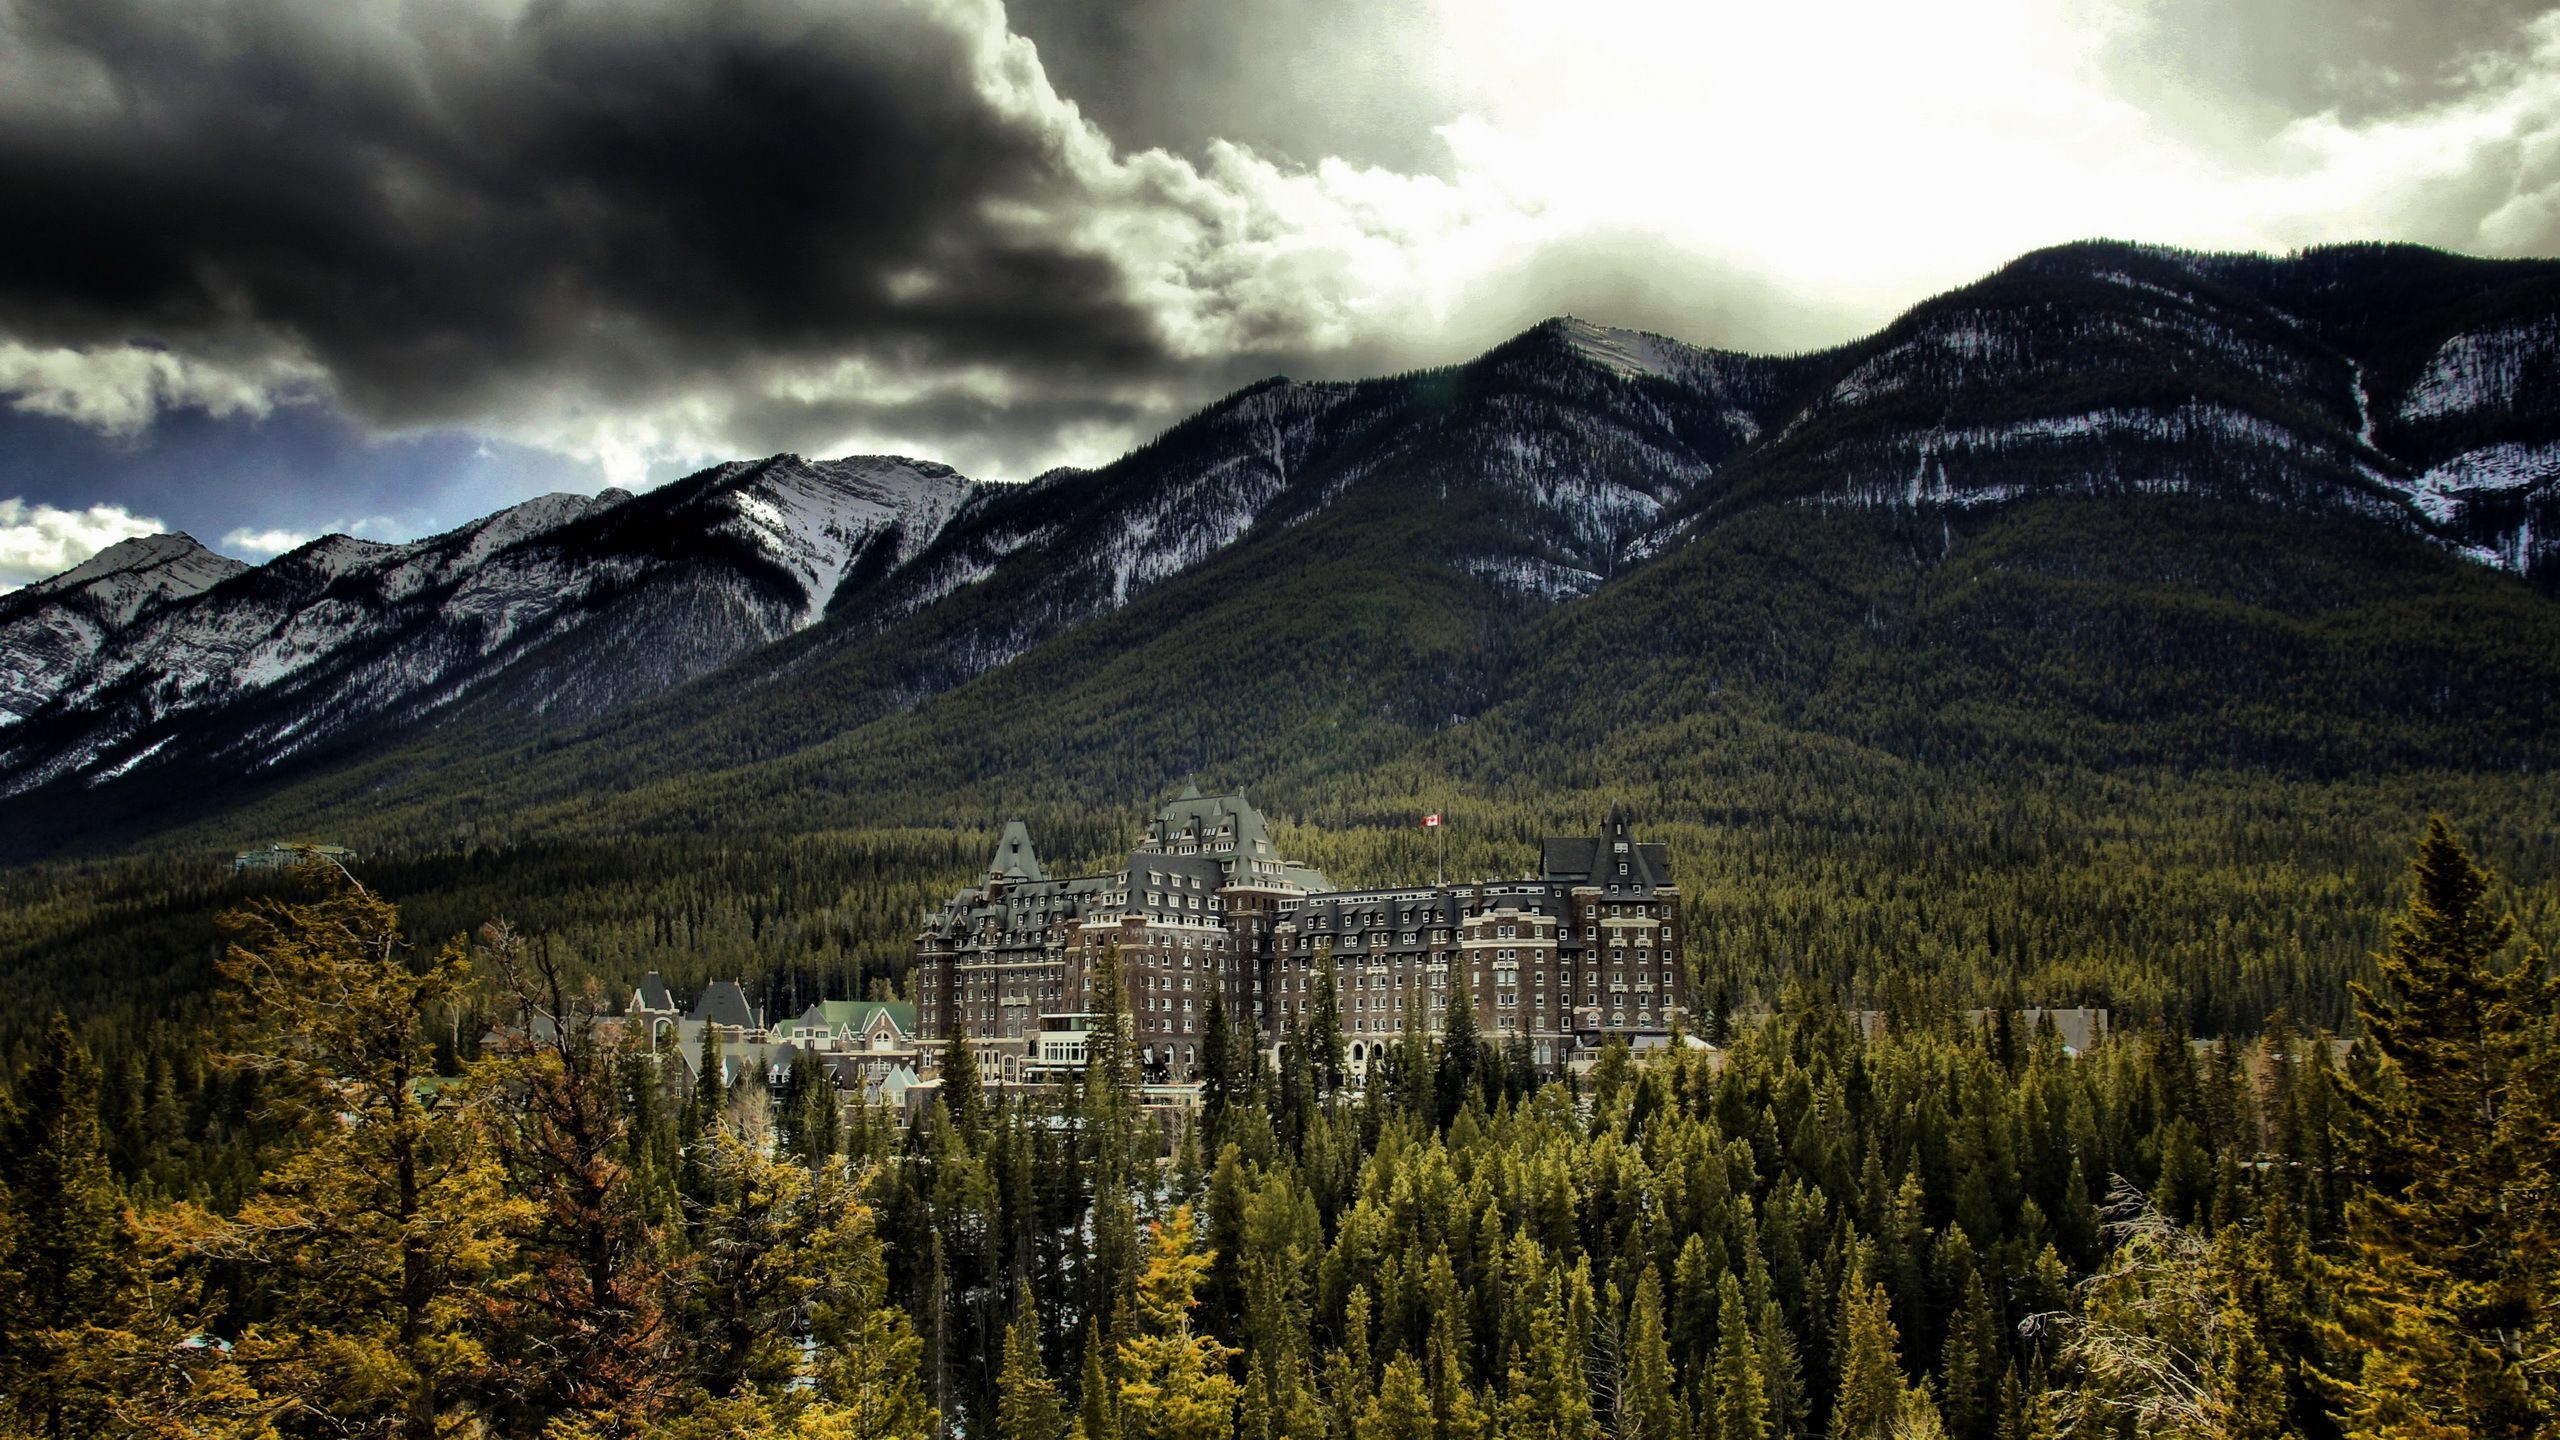 Download wallpaper banff springs hotel, banff national park ...